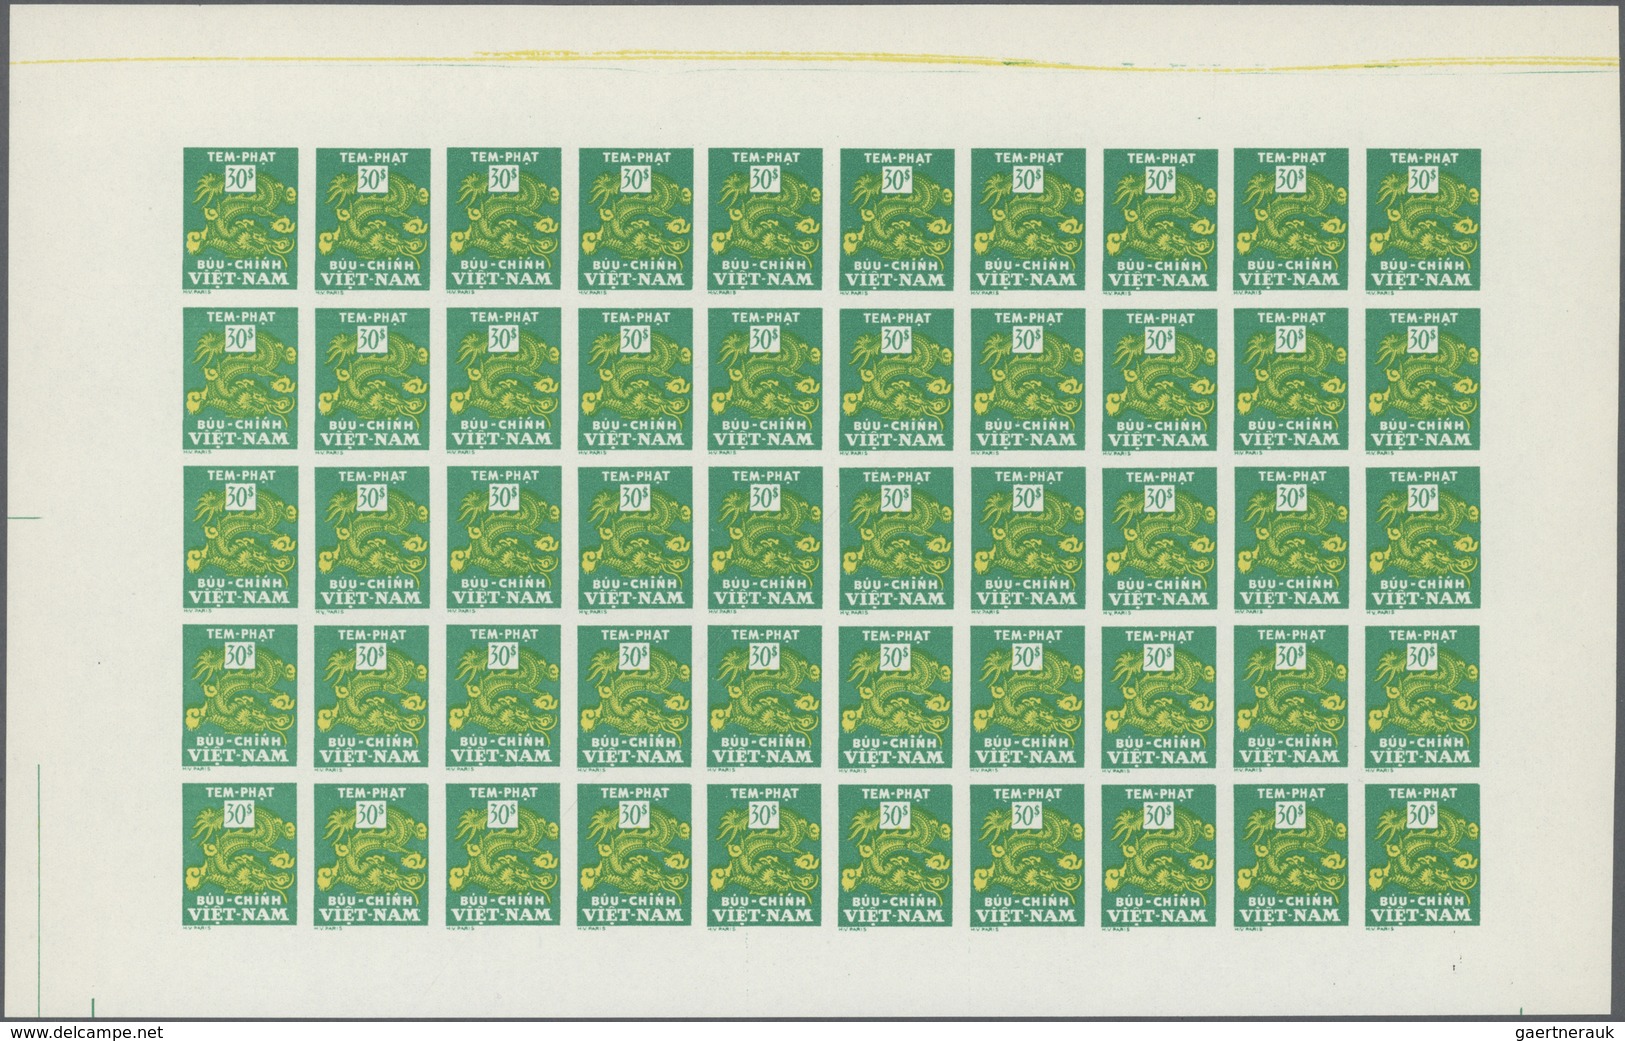 ** Vietnam-Süd - Portomarken: 1955/1956. 6 panneaux complets de 50 avec marges non dentelés. (non réper